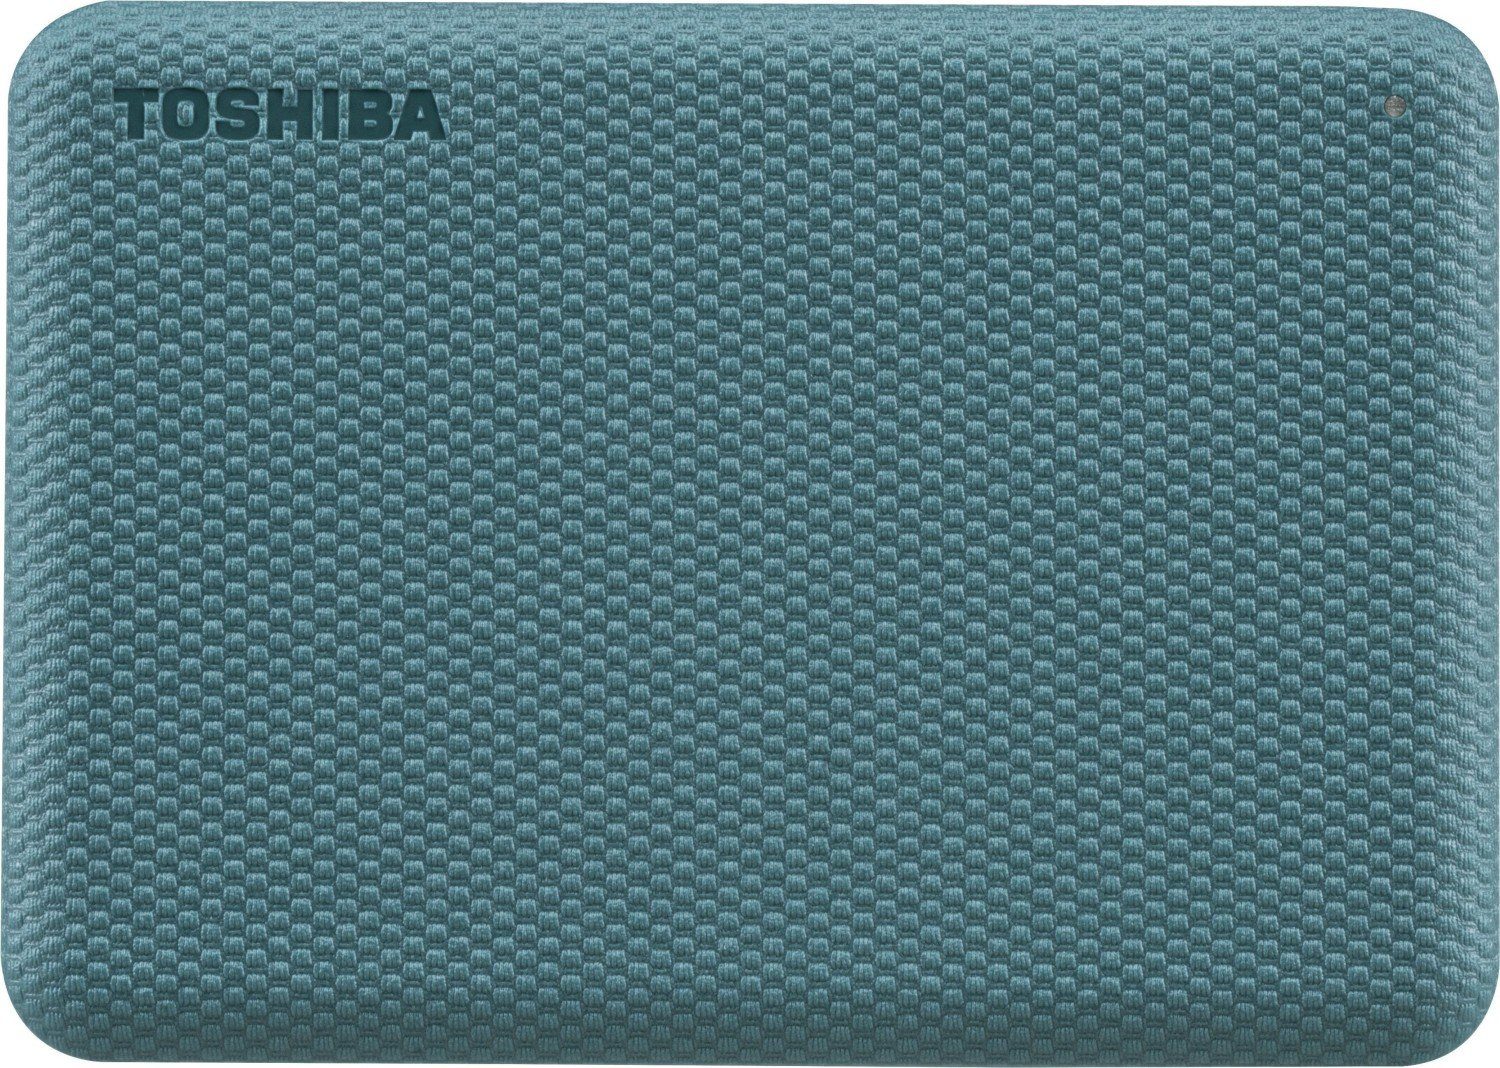 5000 TB) HDD-Festplatte Toshiba Lesegeschwindigkeit, MB/S MB/S 2TB Canvio externe 5000 Schreibgeschwindigkeit Green (2 2020 Advance